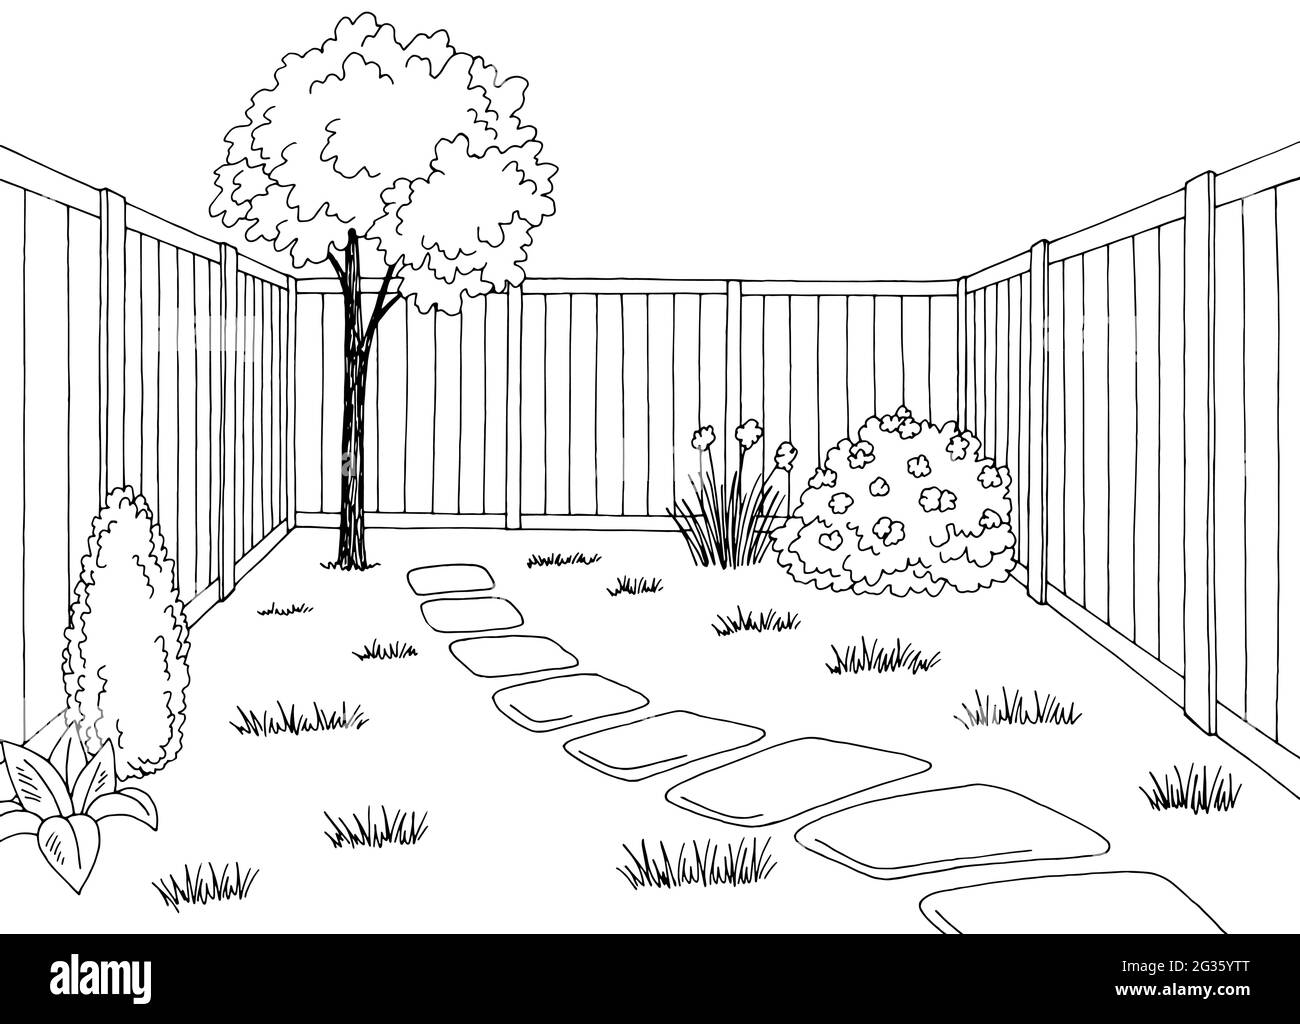 Discover 141+ easy garden sketch